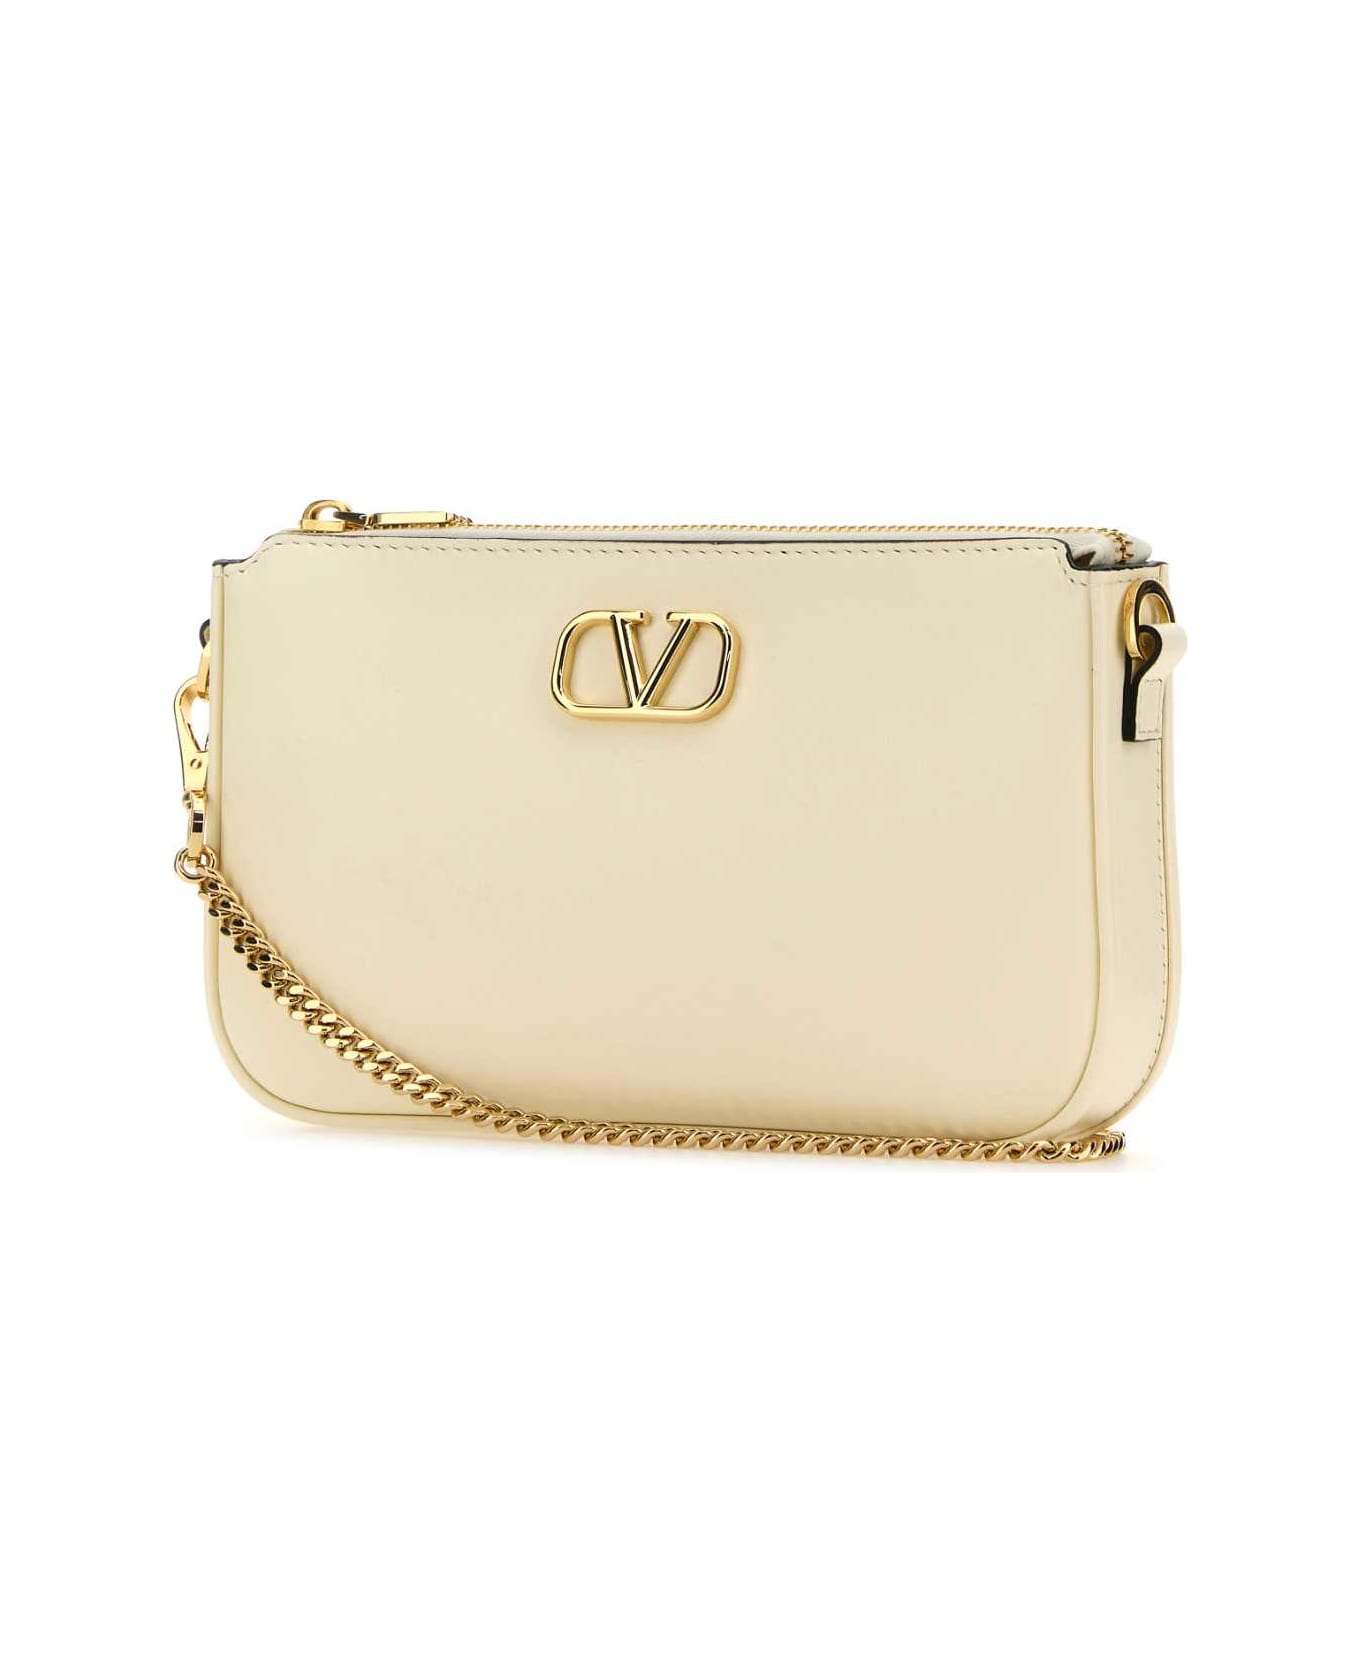 Valentino Garavani Ivory Leather Vlogo Crossbody Bag - IVORY